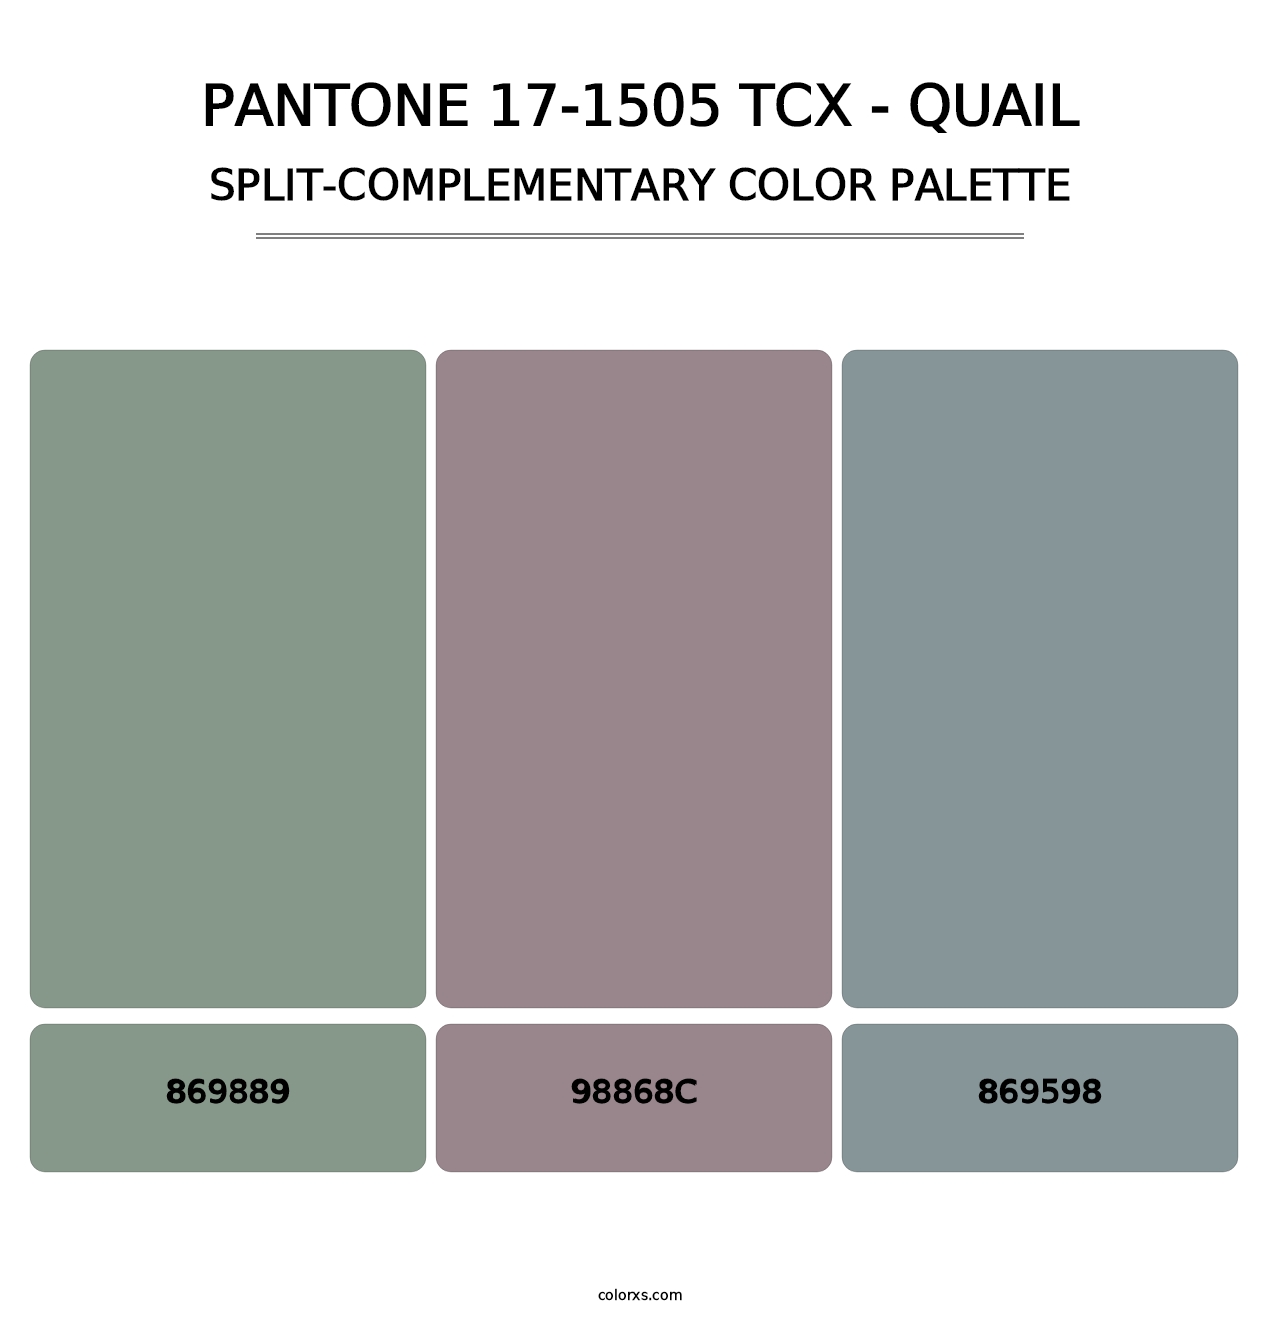 PANTONE 17-1505 TCX - Quail - Split-Complementary Color Palette